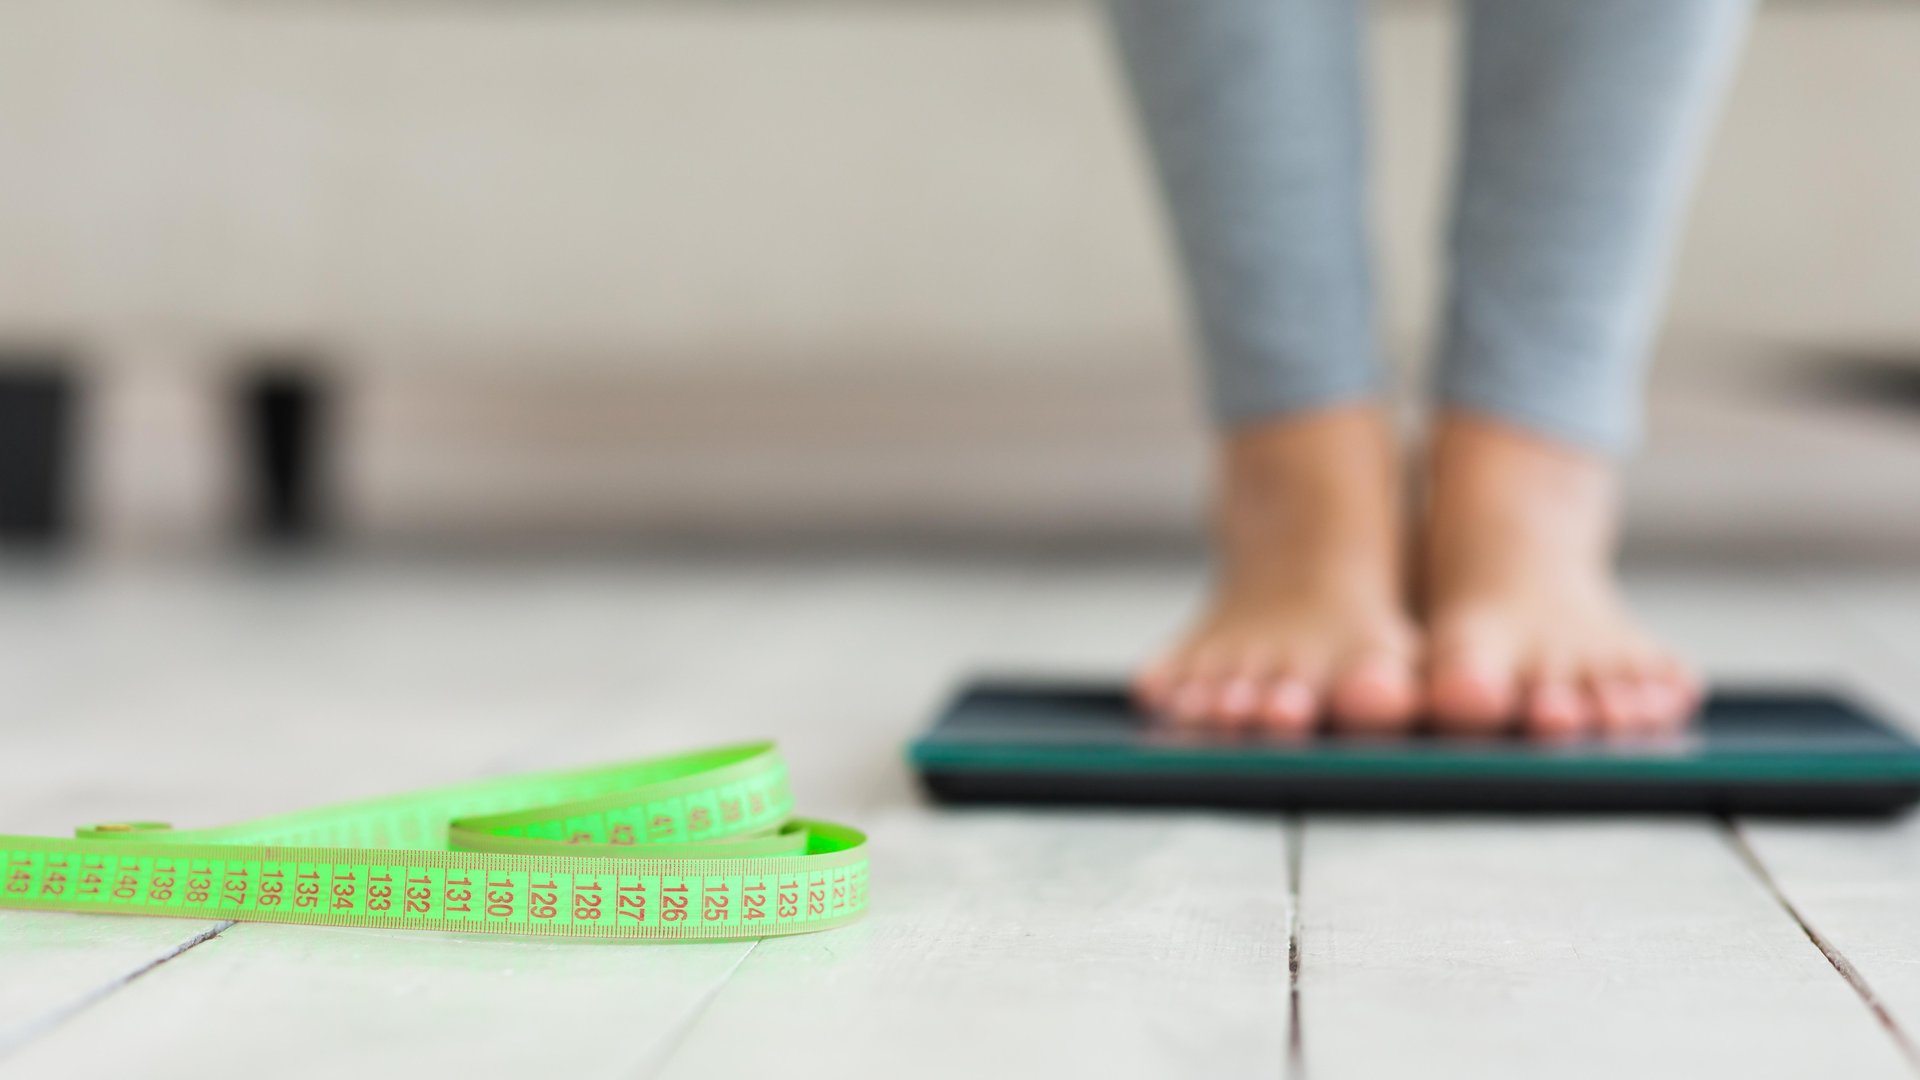 Qué son las células grasas y cómo podrían advertir que una persona aumentará de peso, según un estudio